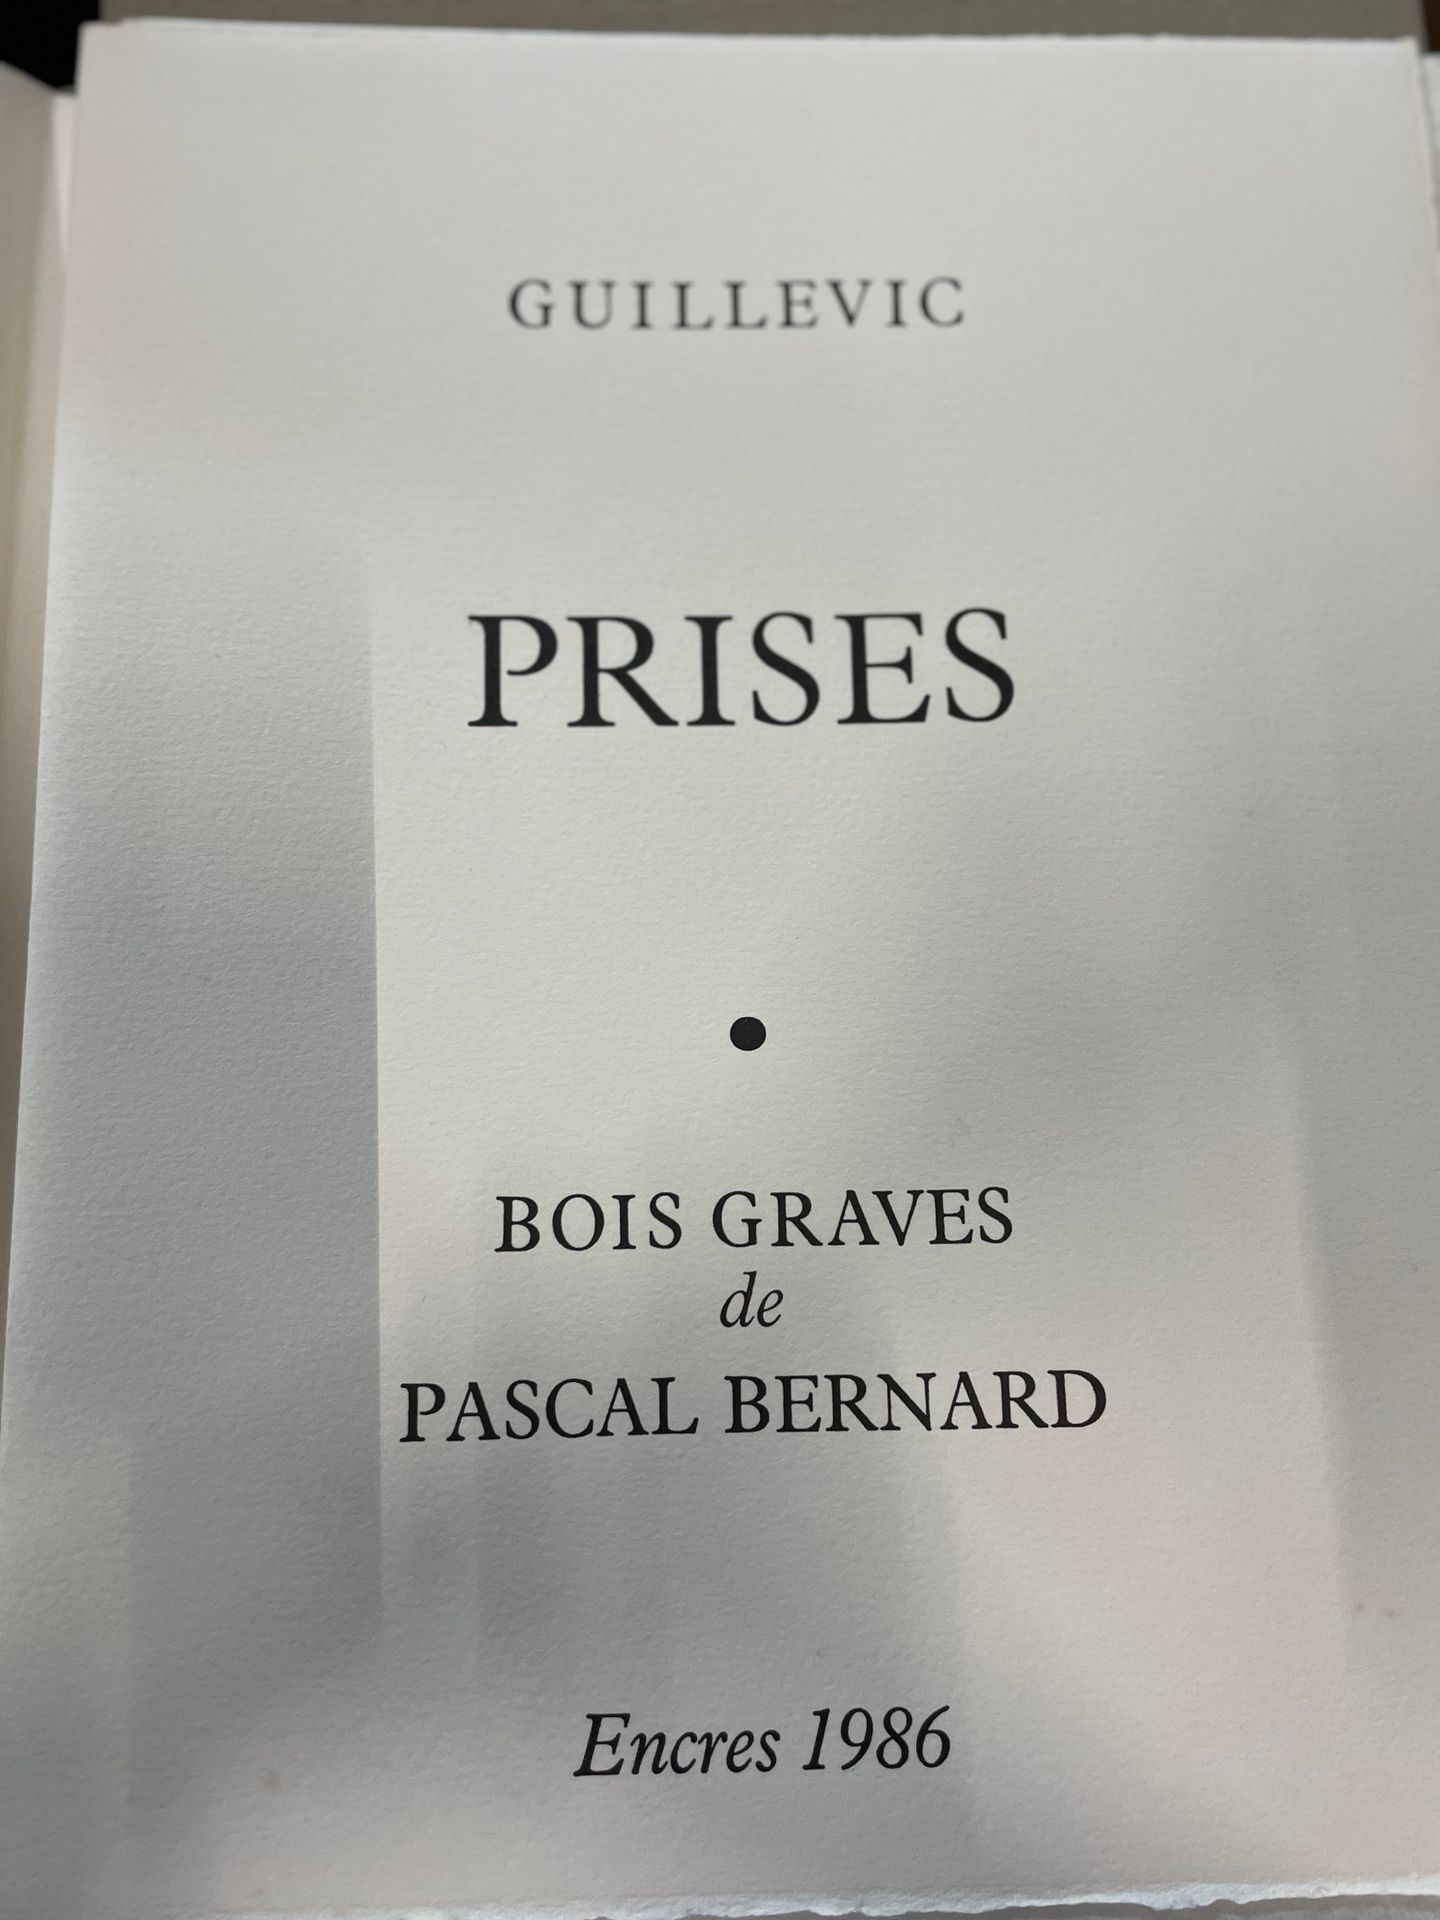 Null 
GUILLEVIC

"Prises". 

8 Bois gravés de Pascal BERNARD

Encres, 1986

un d&hellip;